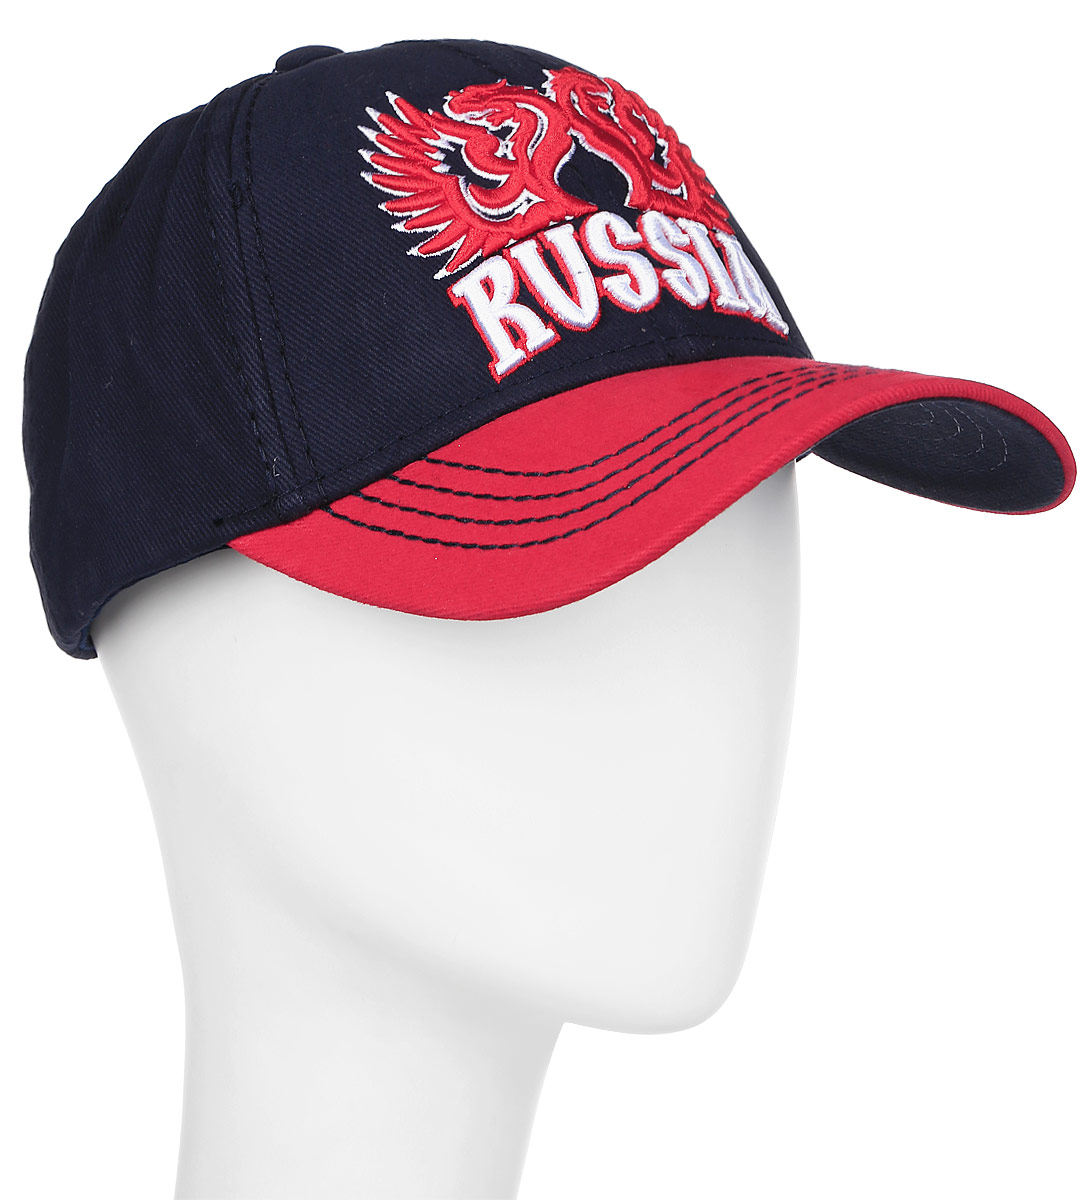 Бейсболка мужская Россия, цвет: черный, красный. 10135. Размер L/XL (55-58)